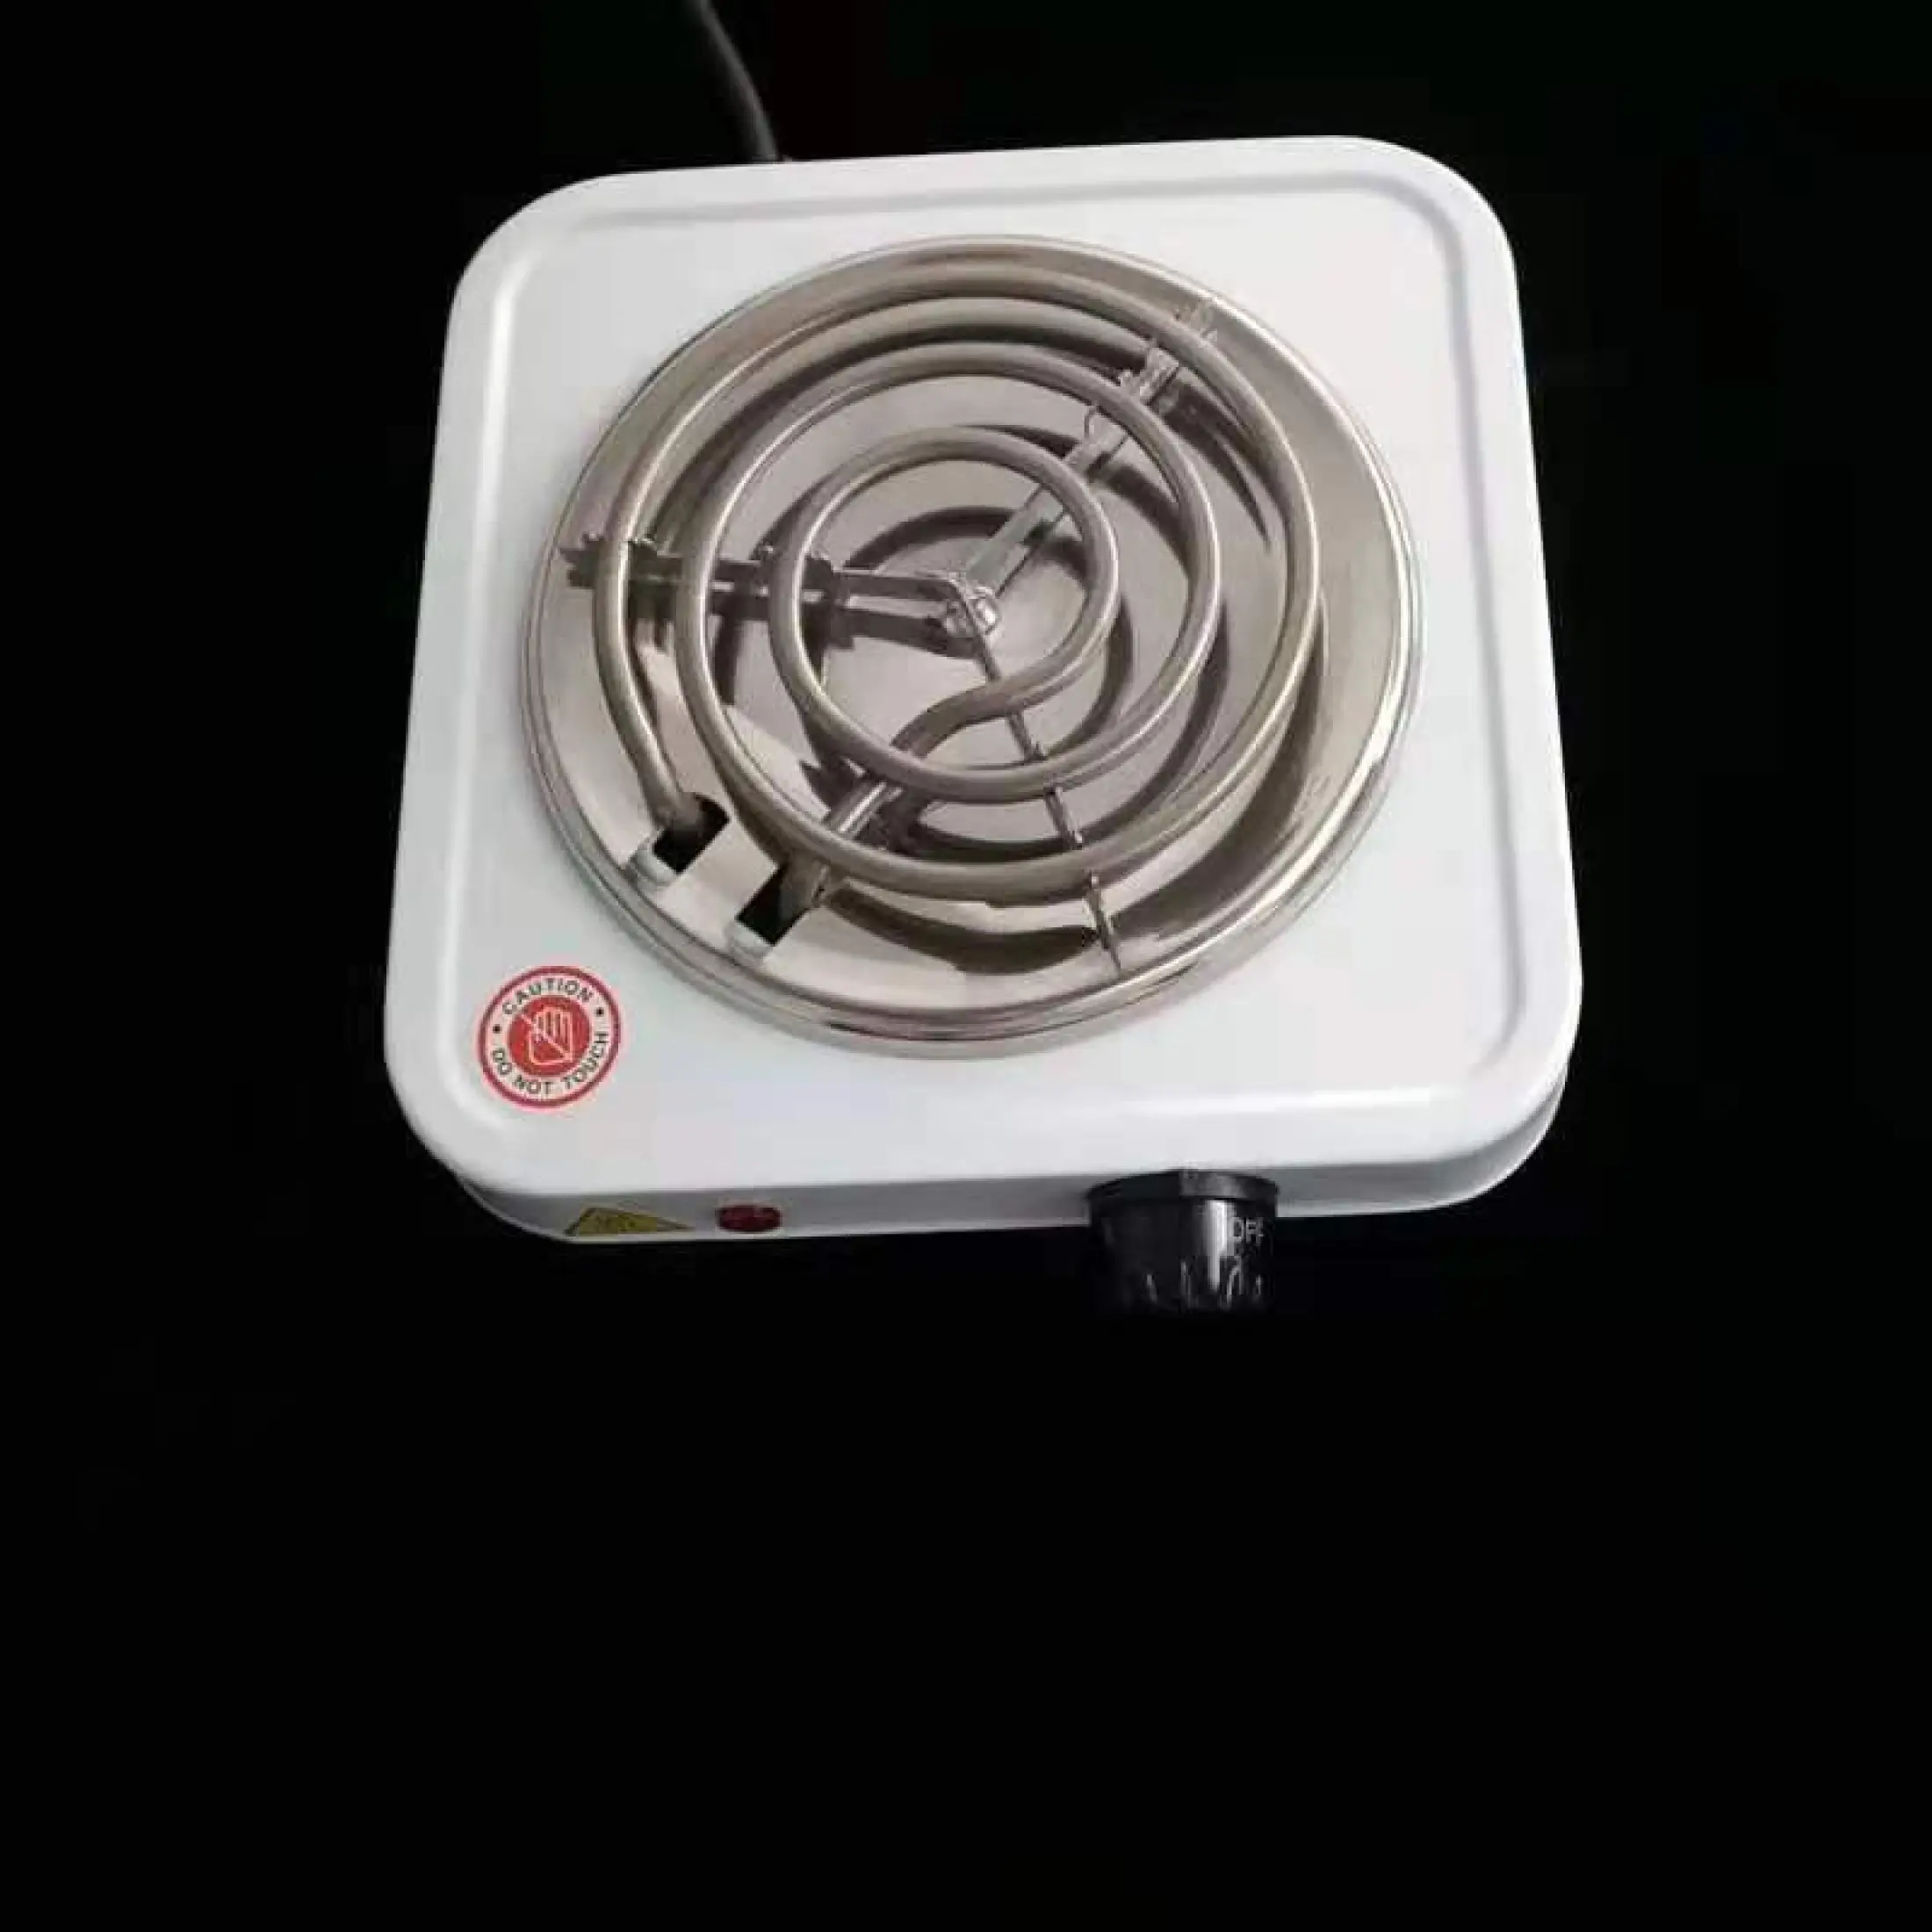 FreeShip-Bếp điện mini 1000w-Bếp Điện Đơn 1000w - Bếp Điện Không Kén Nồi Nấu Siêu